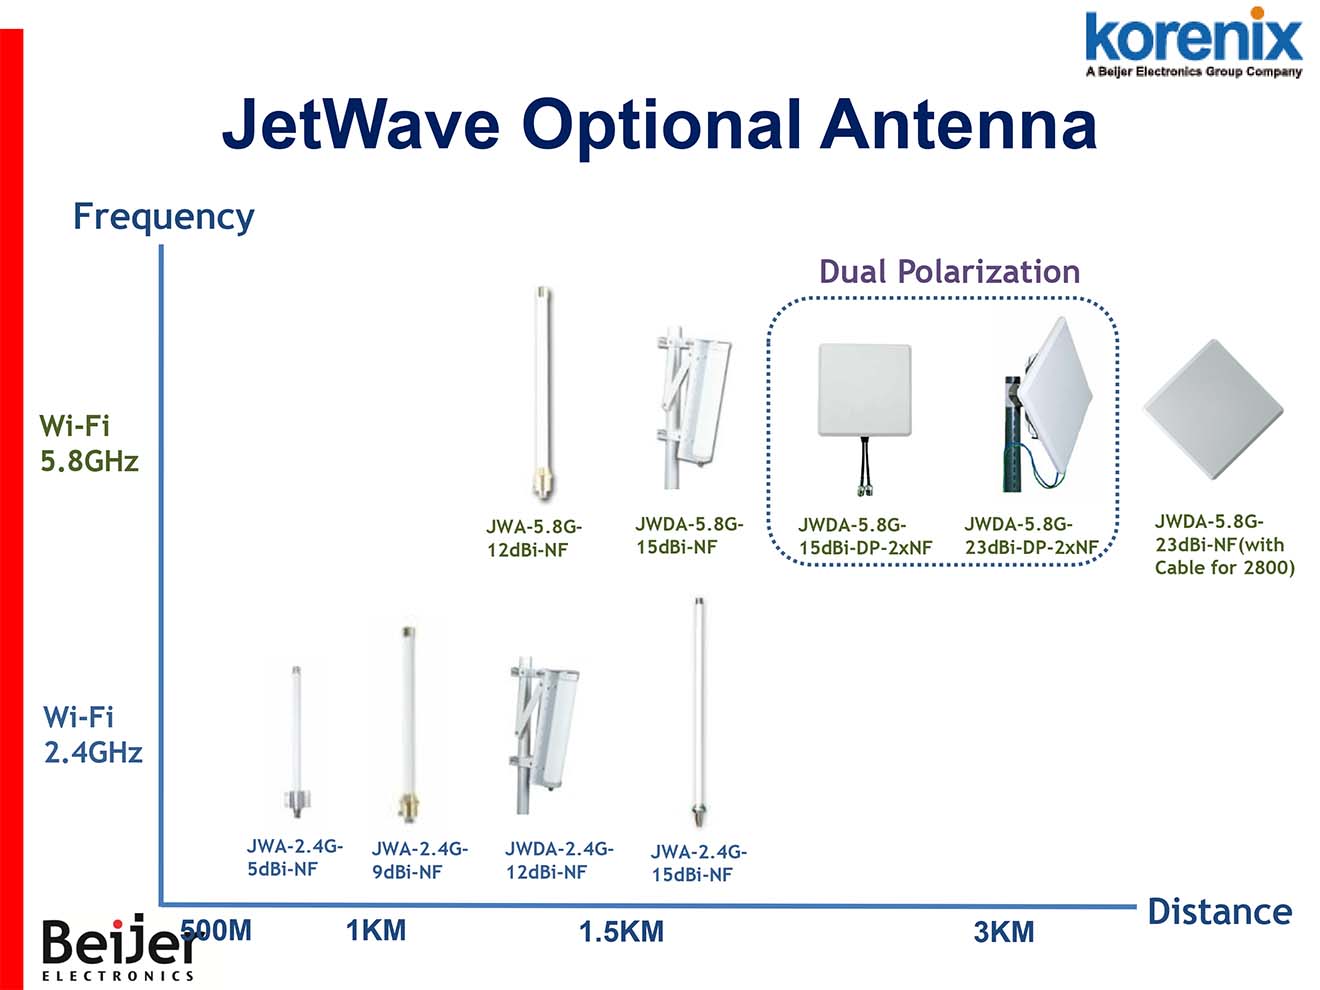 JWDA-2.4G-5dBi-NF Korenix Anten Omi đẳng hướng tăng khoảng cách thu phát sóng 5dBi